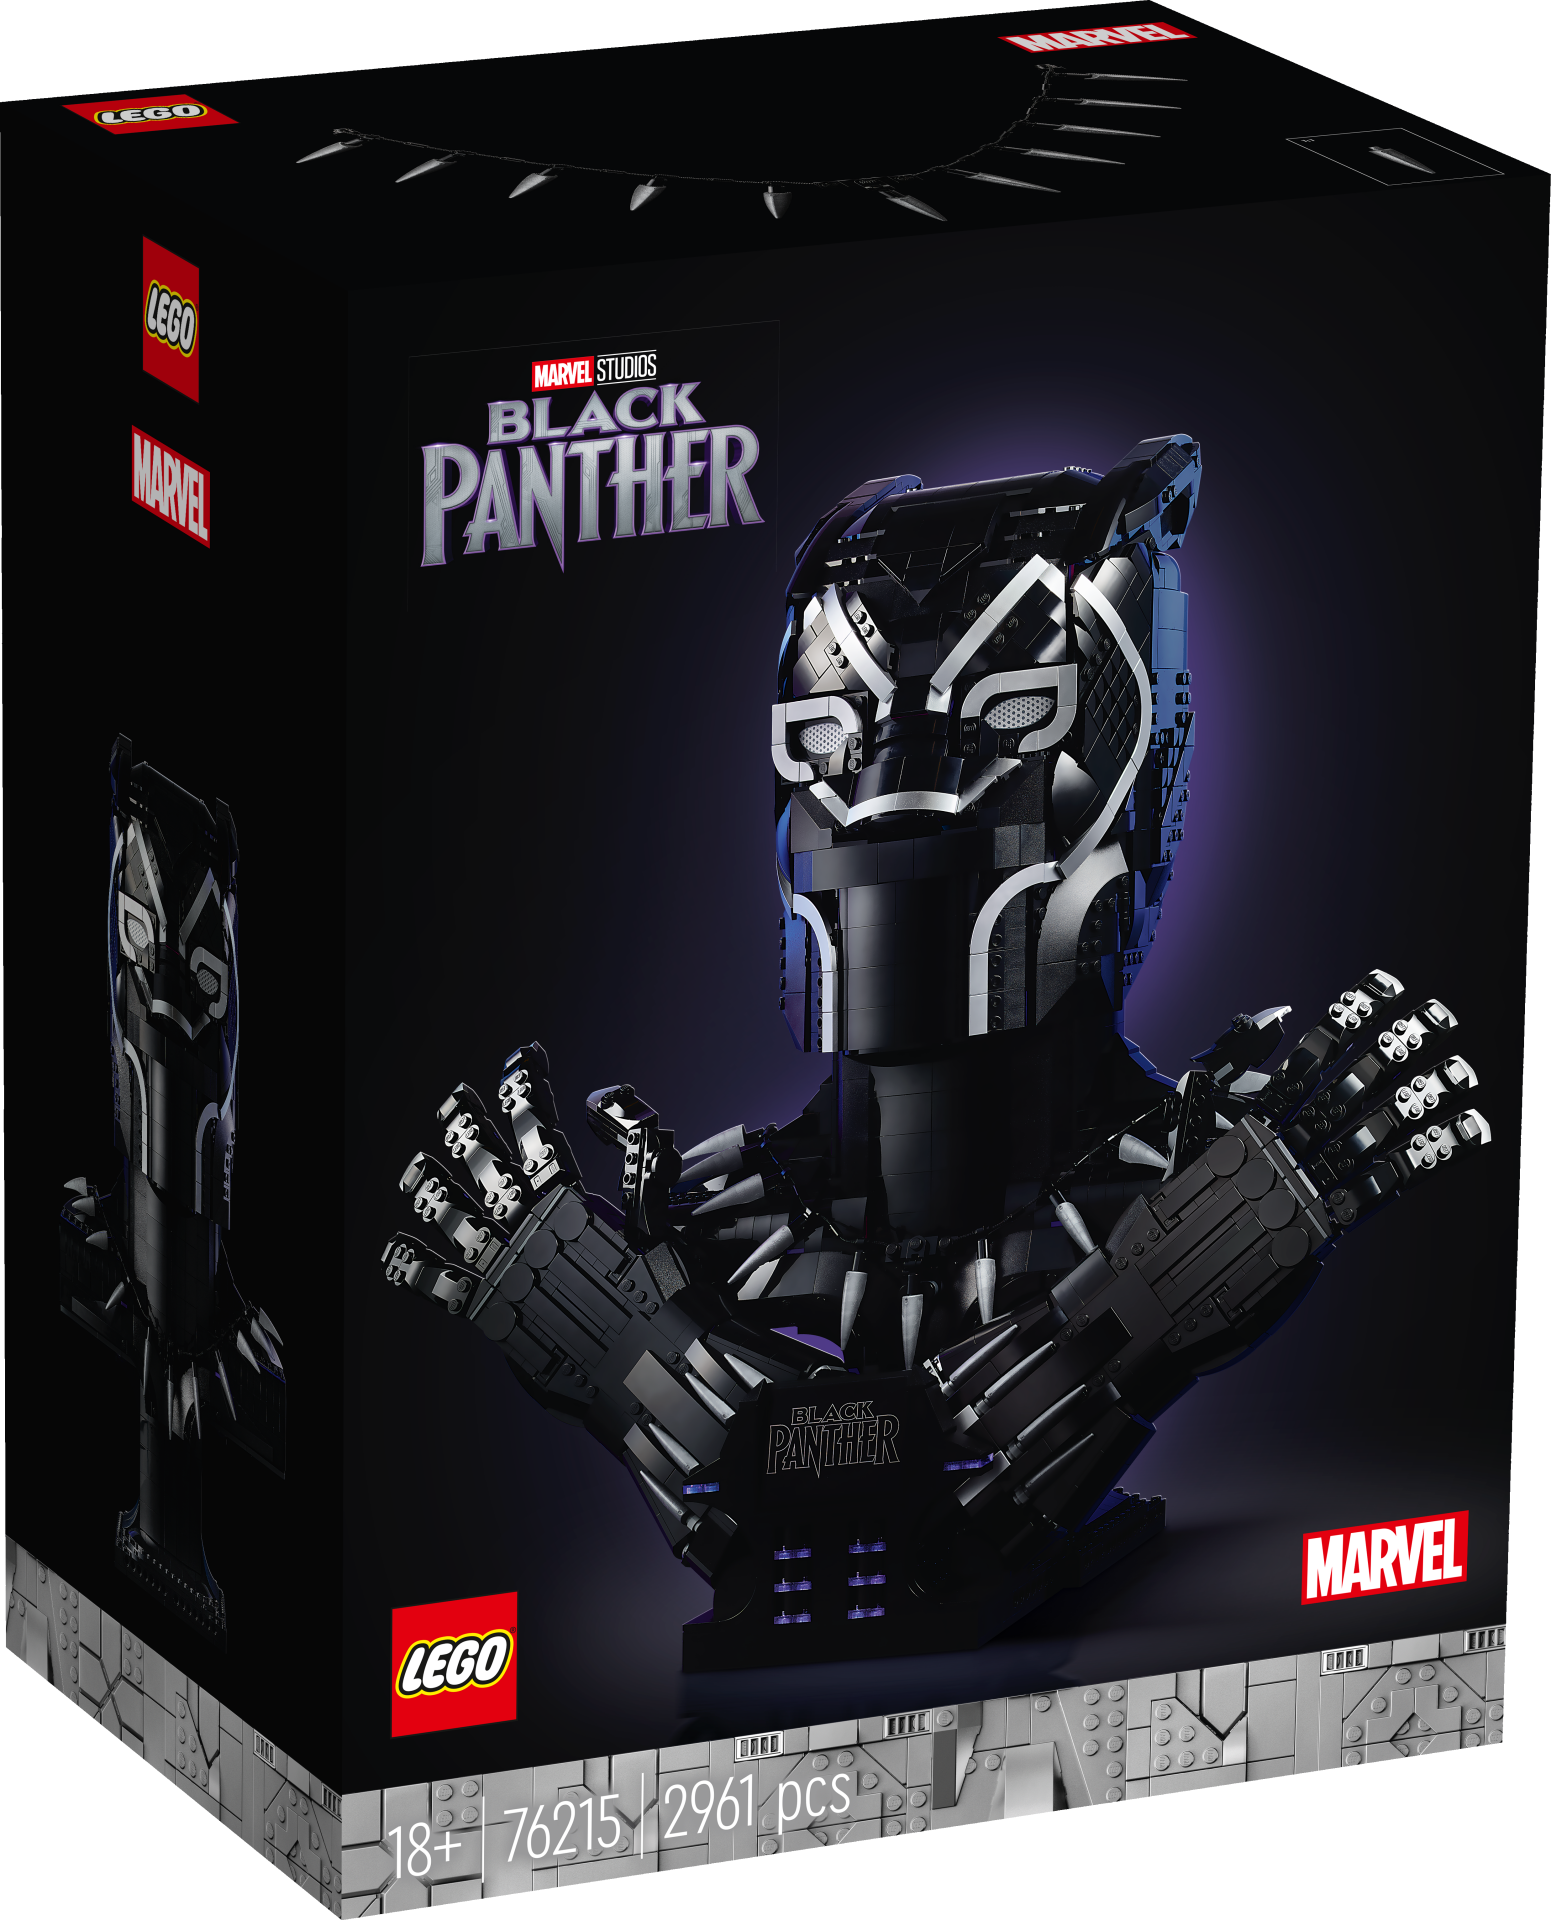 Black Panther LEGO Marvel: ecco il nuovo set a grandezza naturale 1